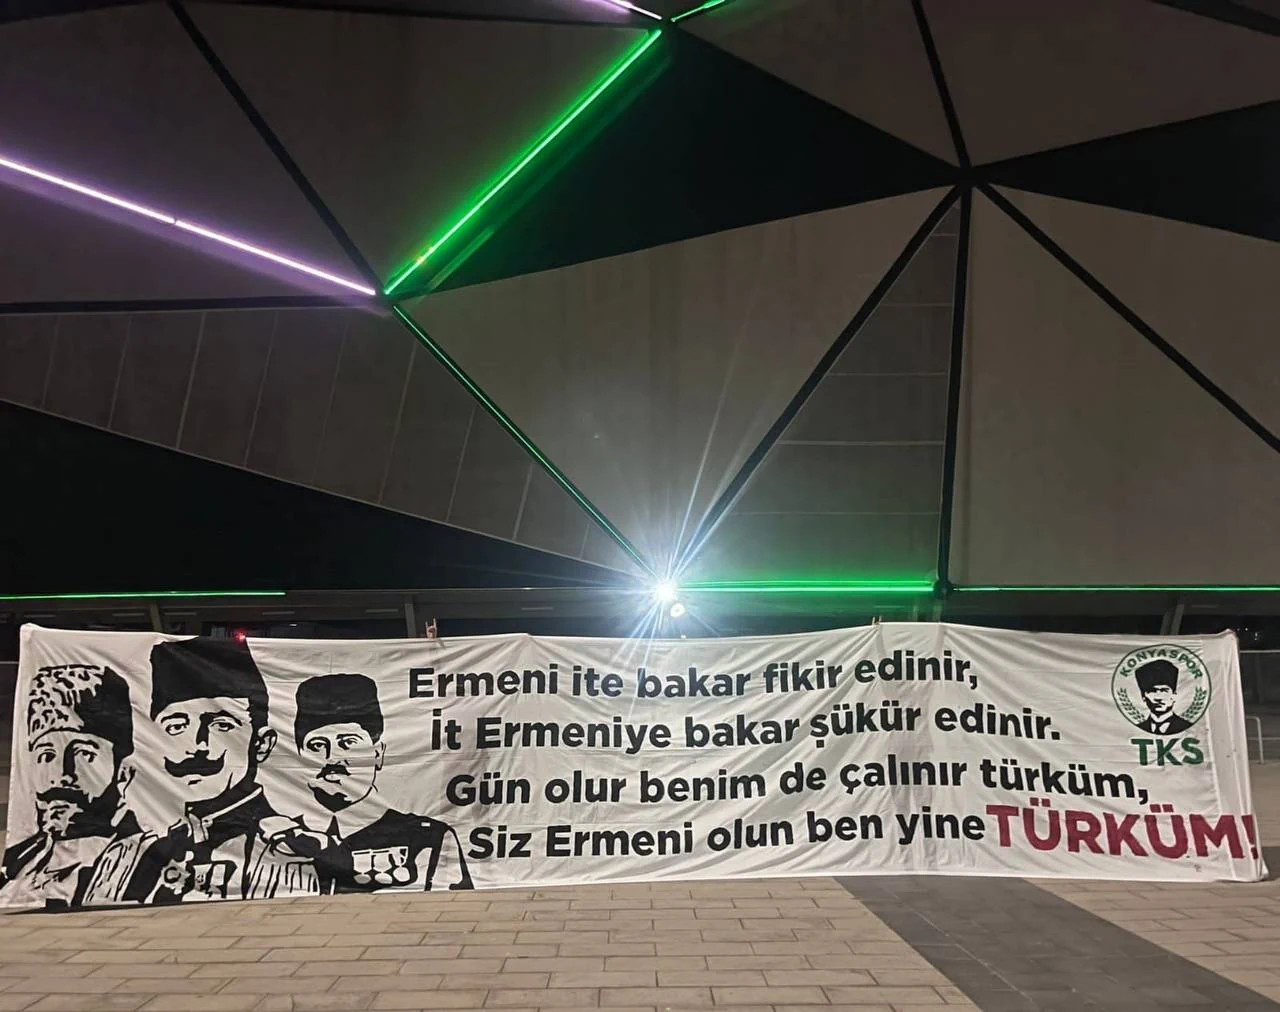 Баннеры турецких болельщиков